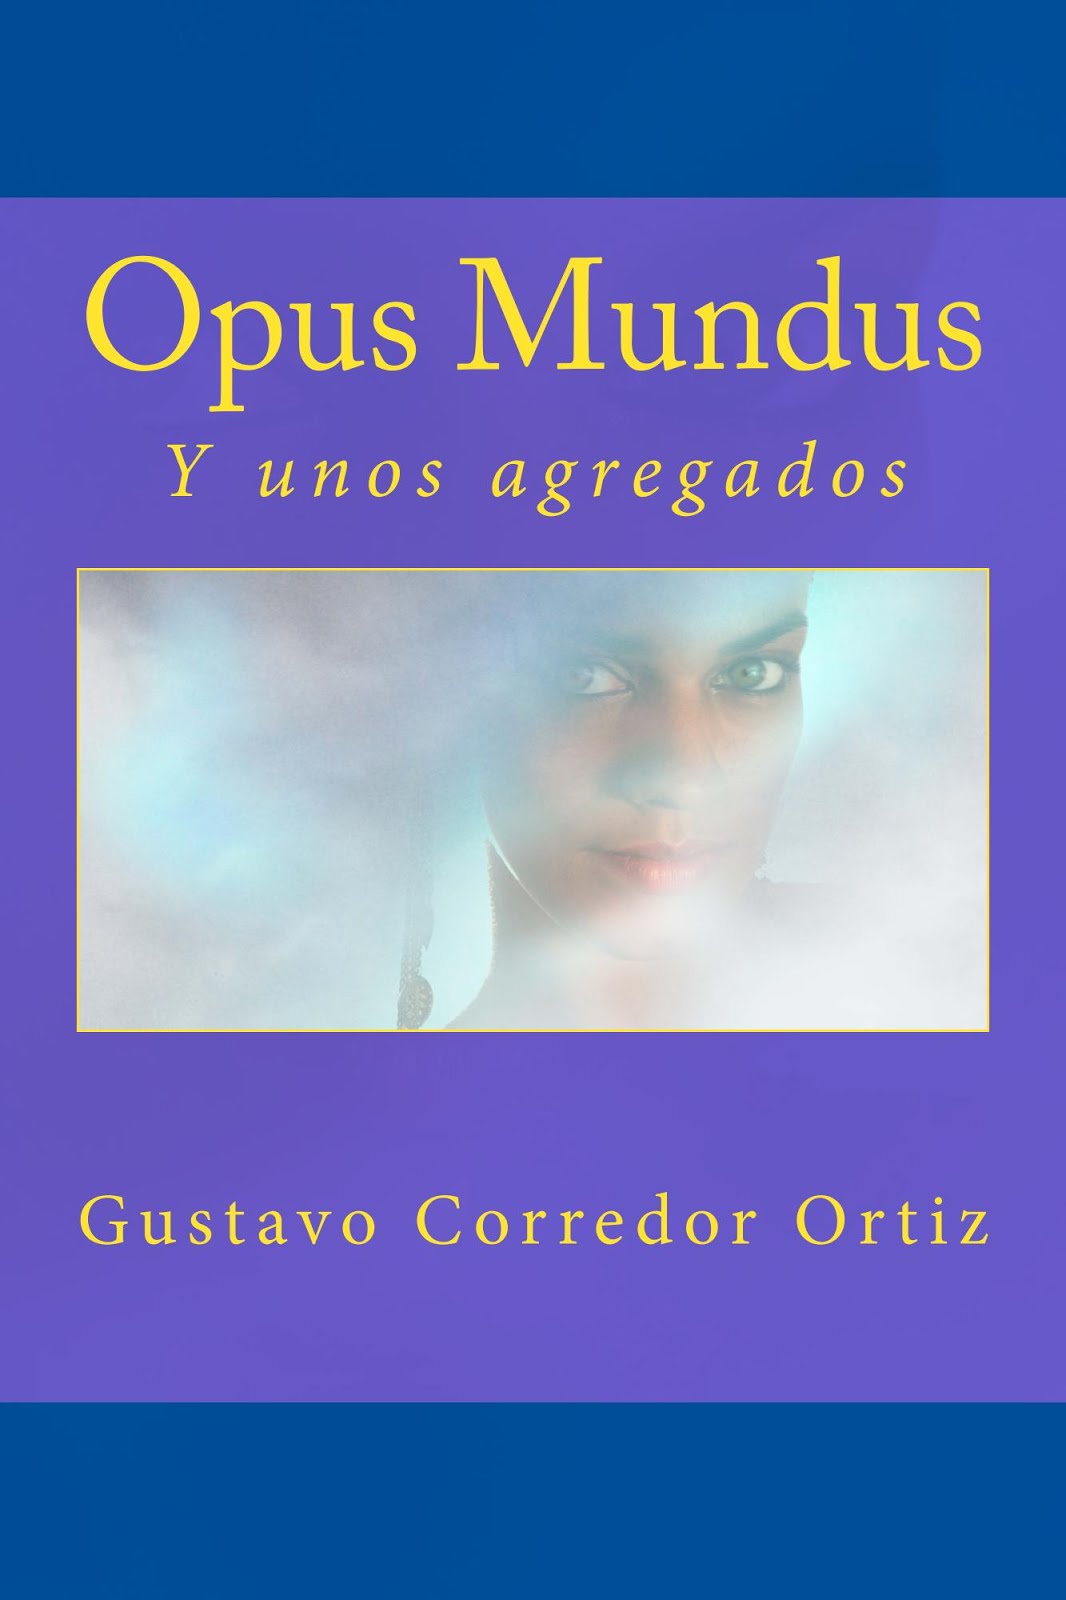 El libro Opus Mundus